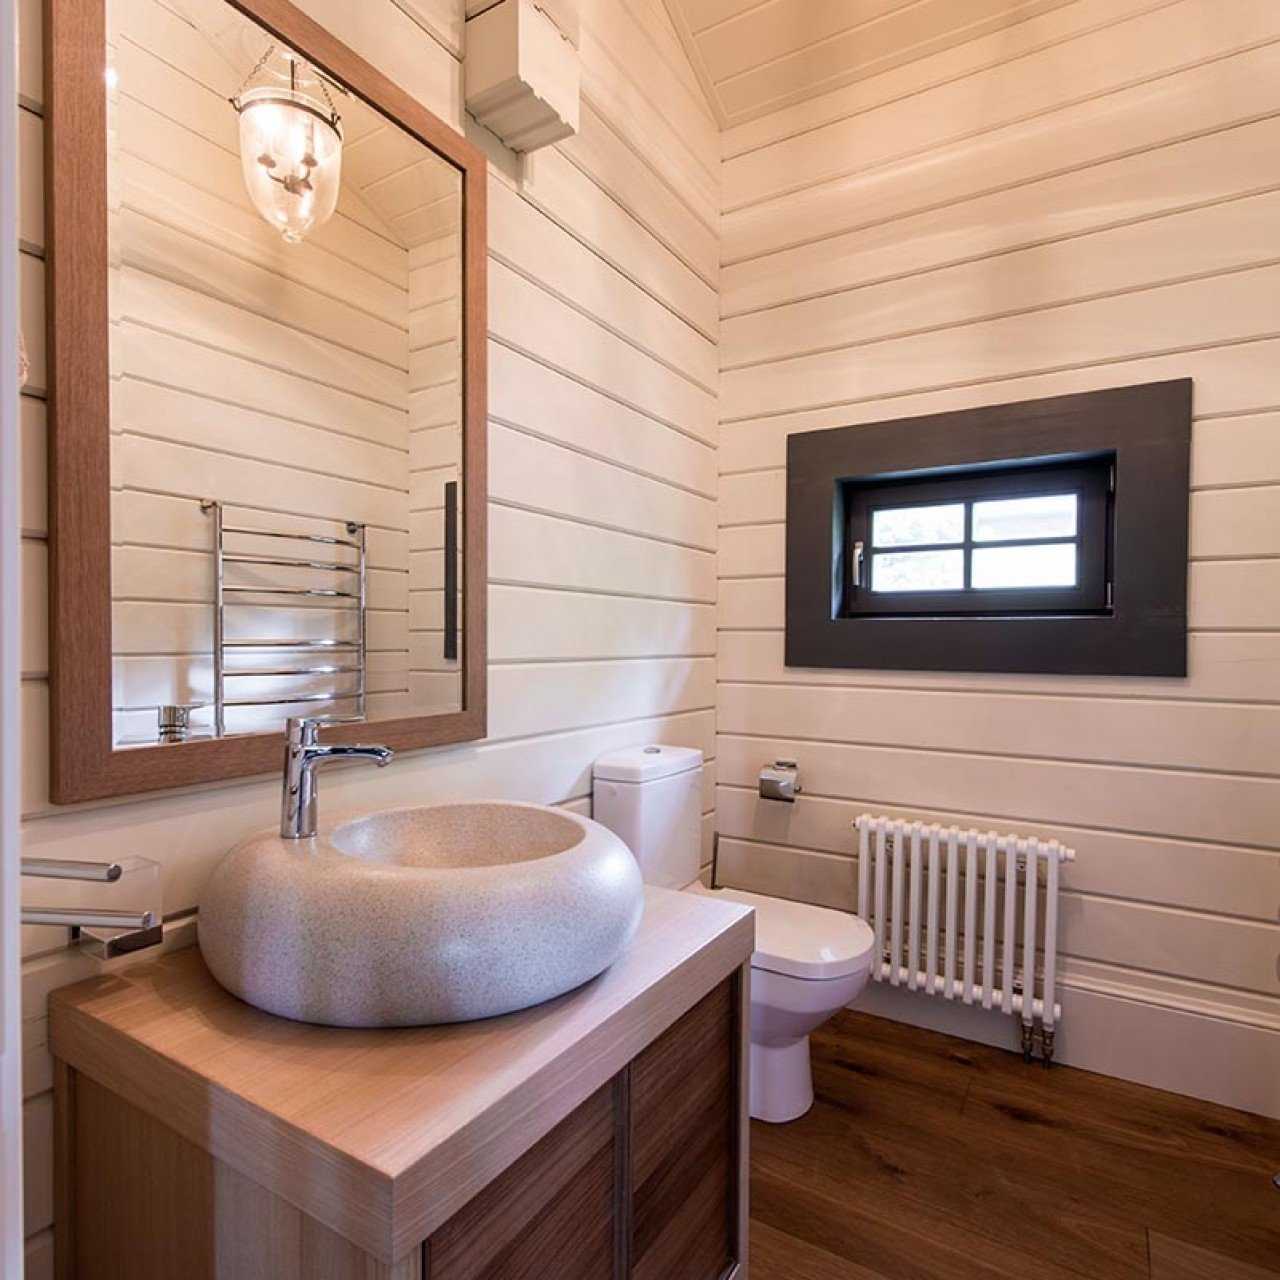 Ванная комната в деревянном доме: как сделать ремонт, правильное устройство и обустройство